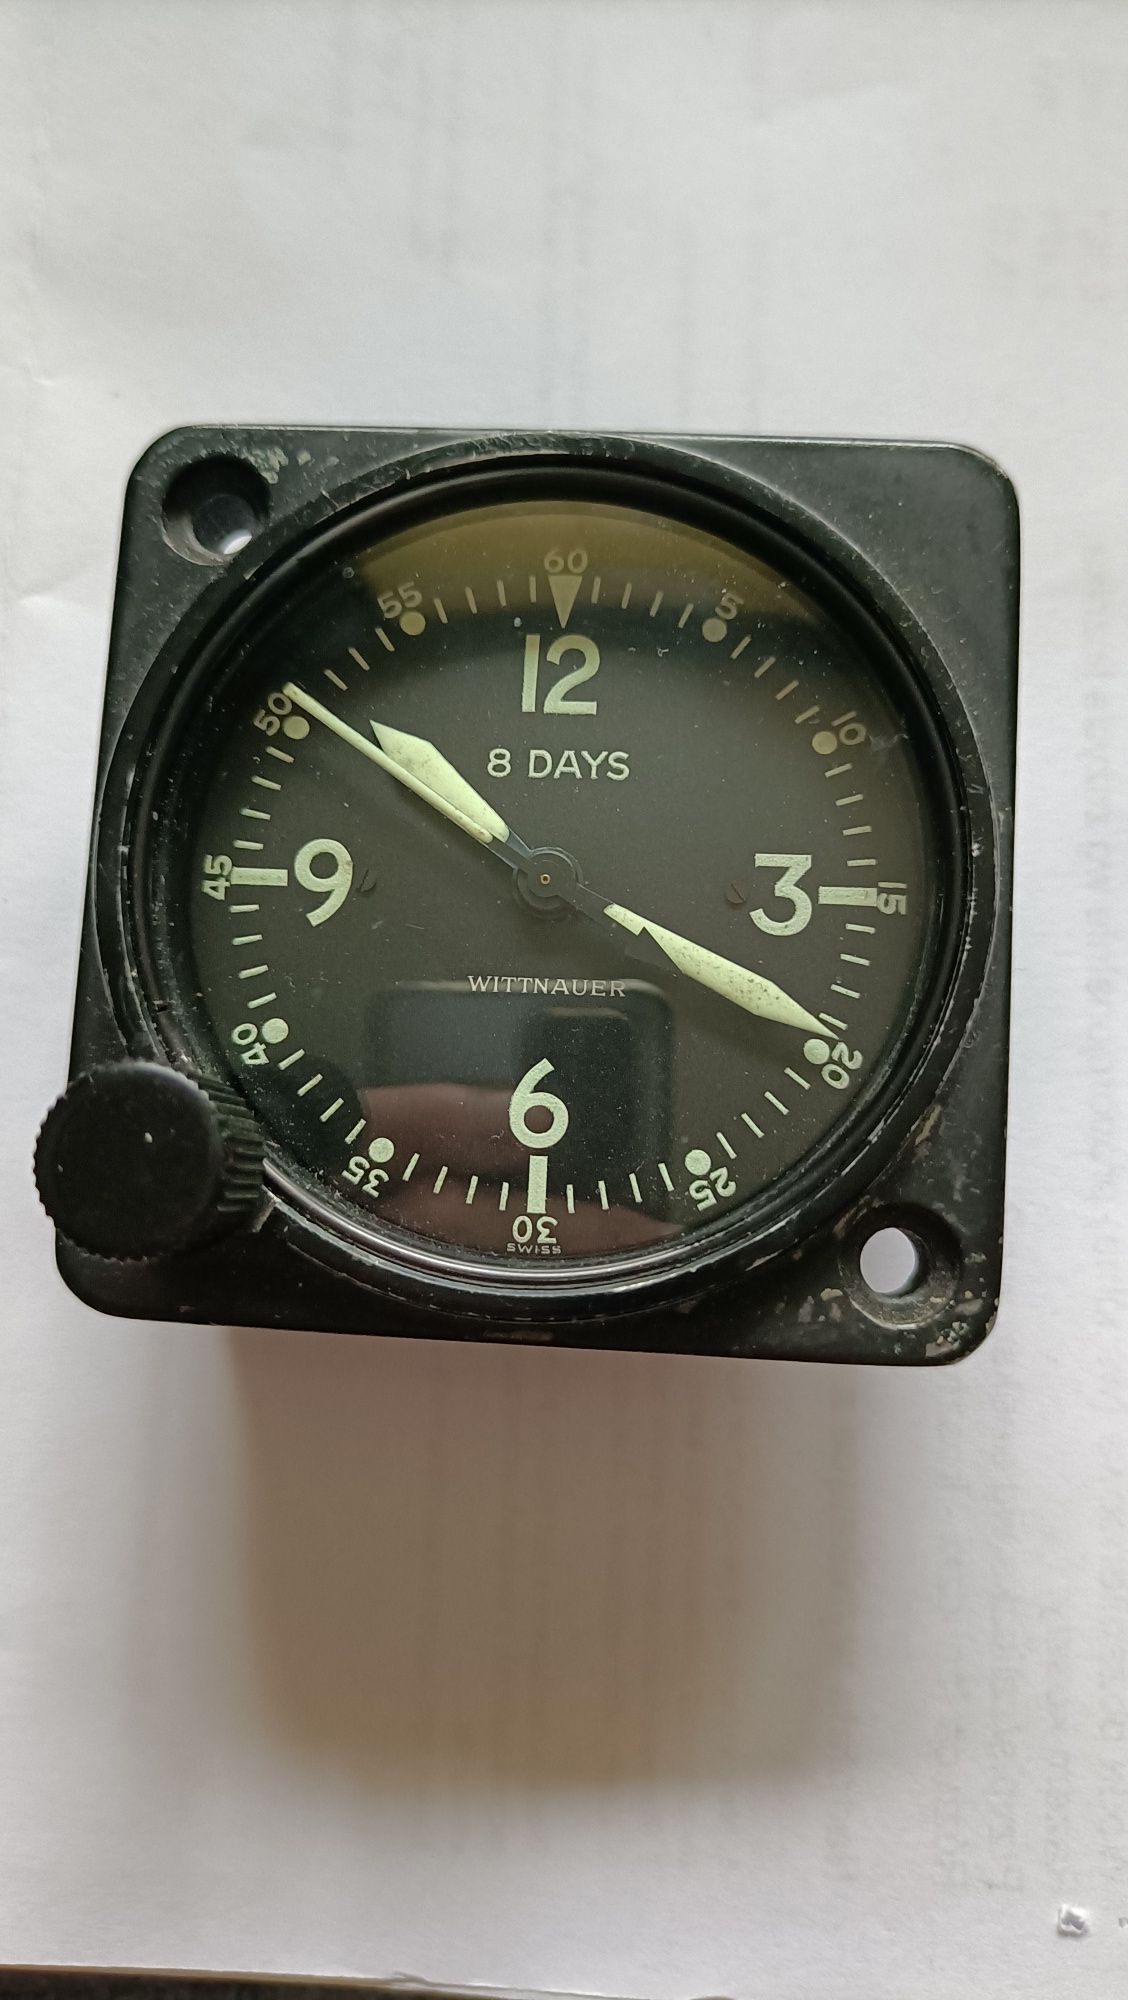 Zegar wojskowyz samolotu  i kompas Wittnauer wojskowy.